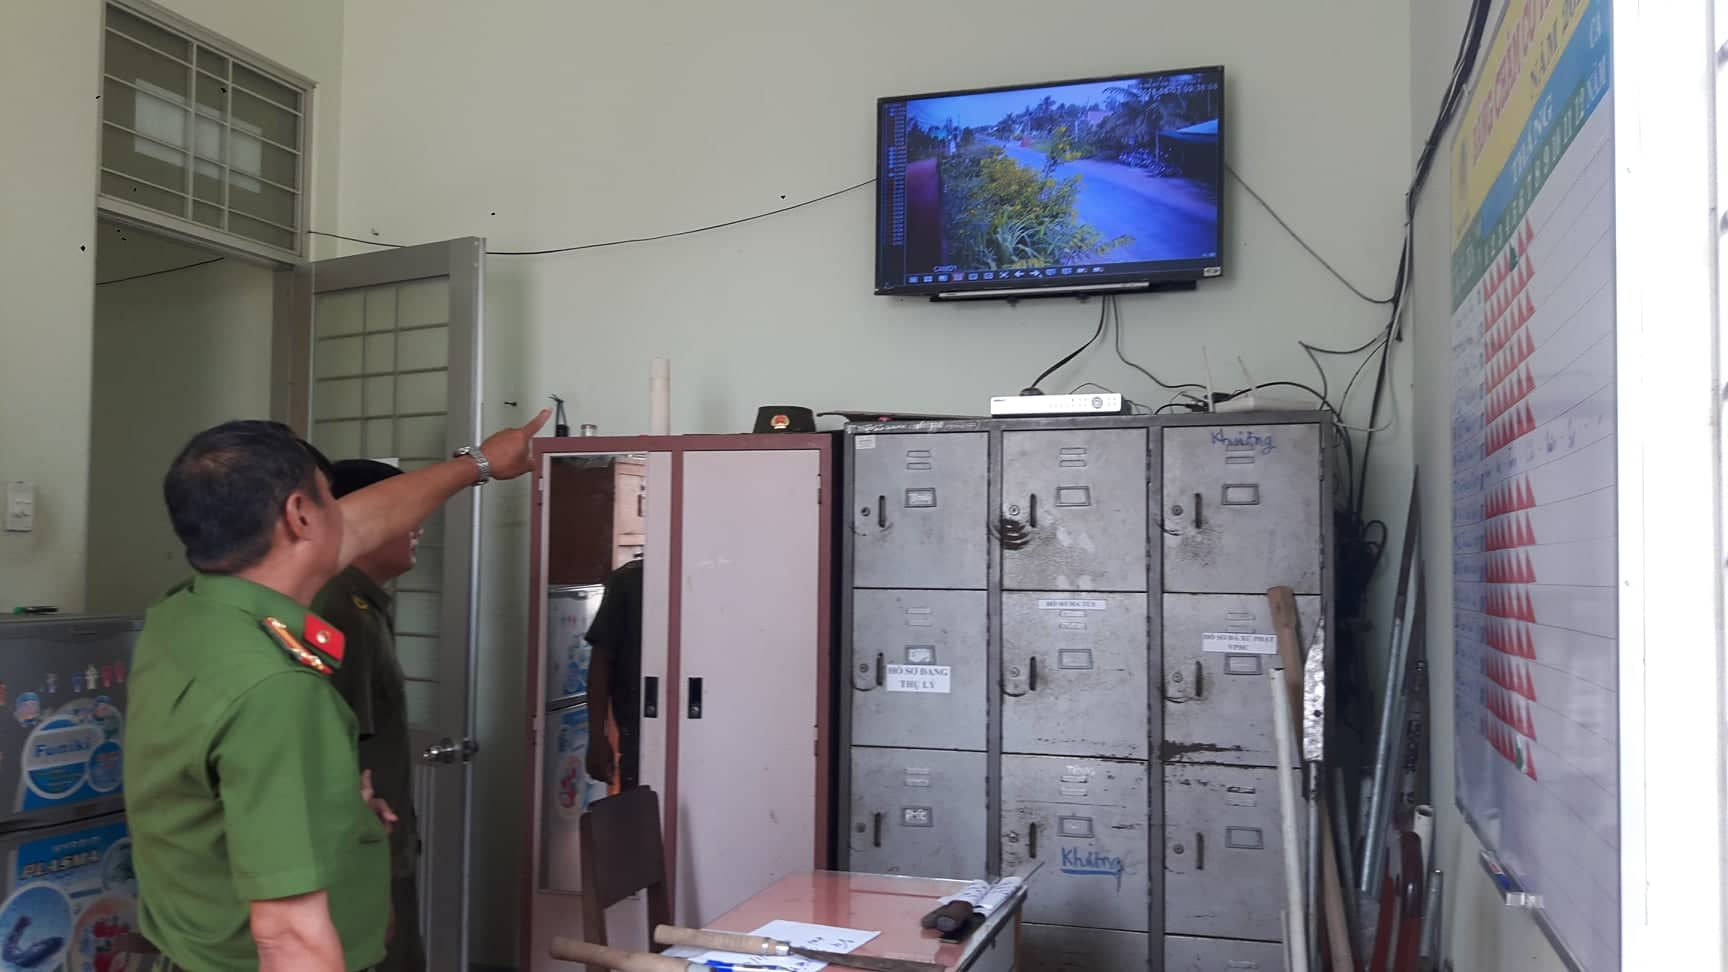 Hà Nội Nhân rộng mô hình lắp đặt camera an ninh trên địa bàn thành phố   DNTT online